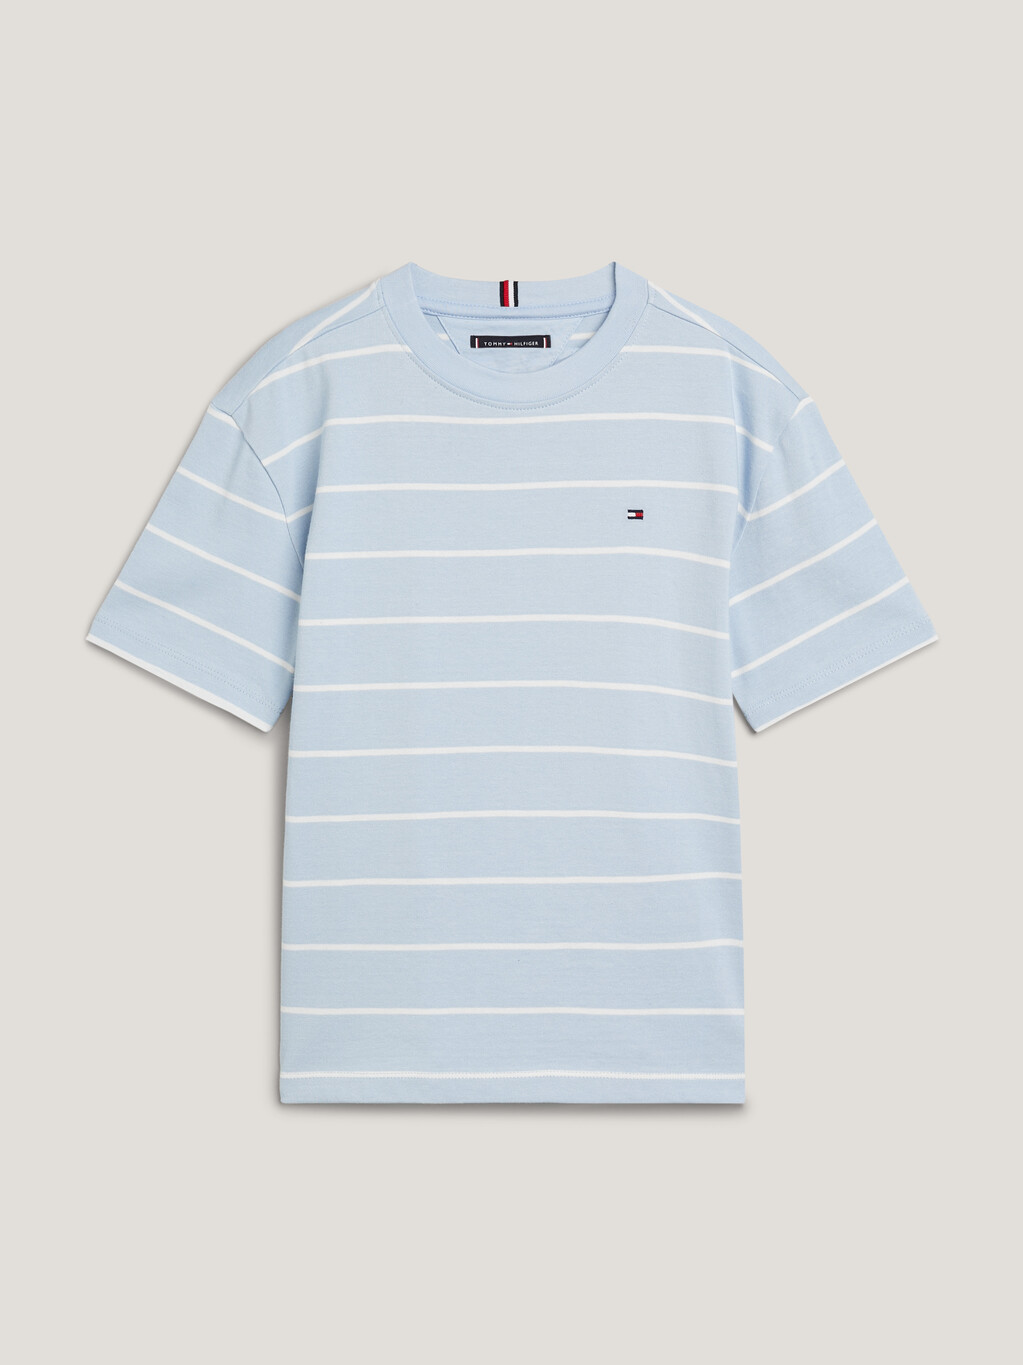 條紋旗幟刺繡 T 恤, Breezy Blue Base/White Stripe, hi-res